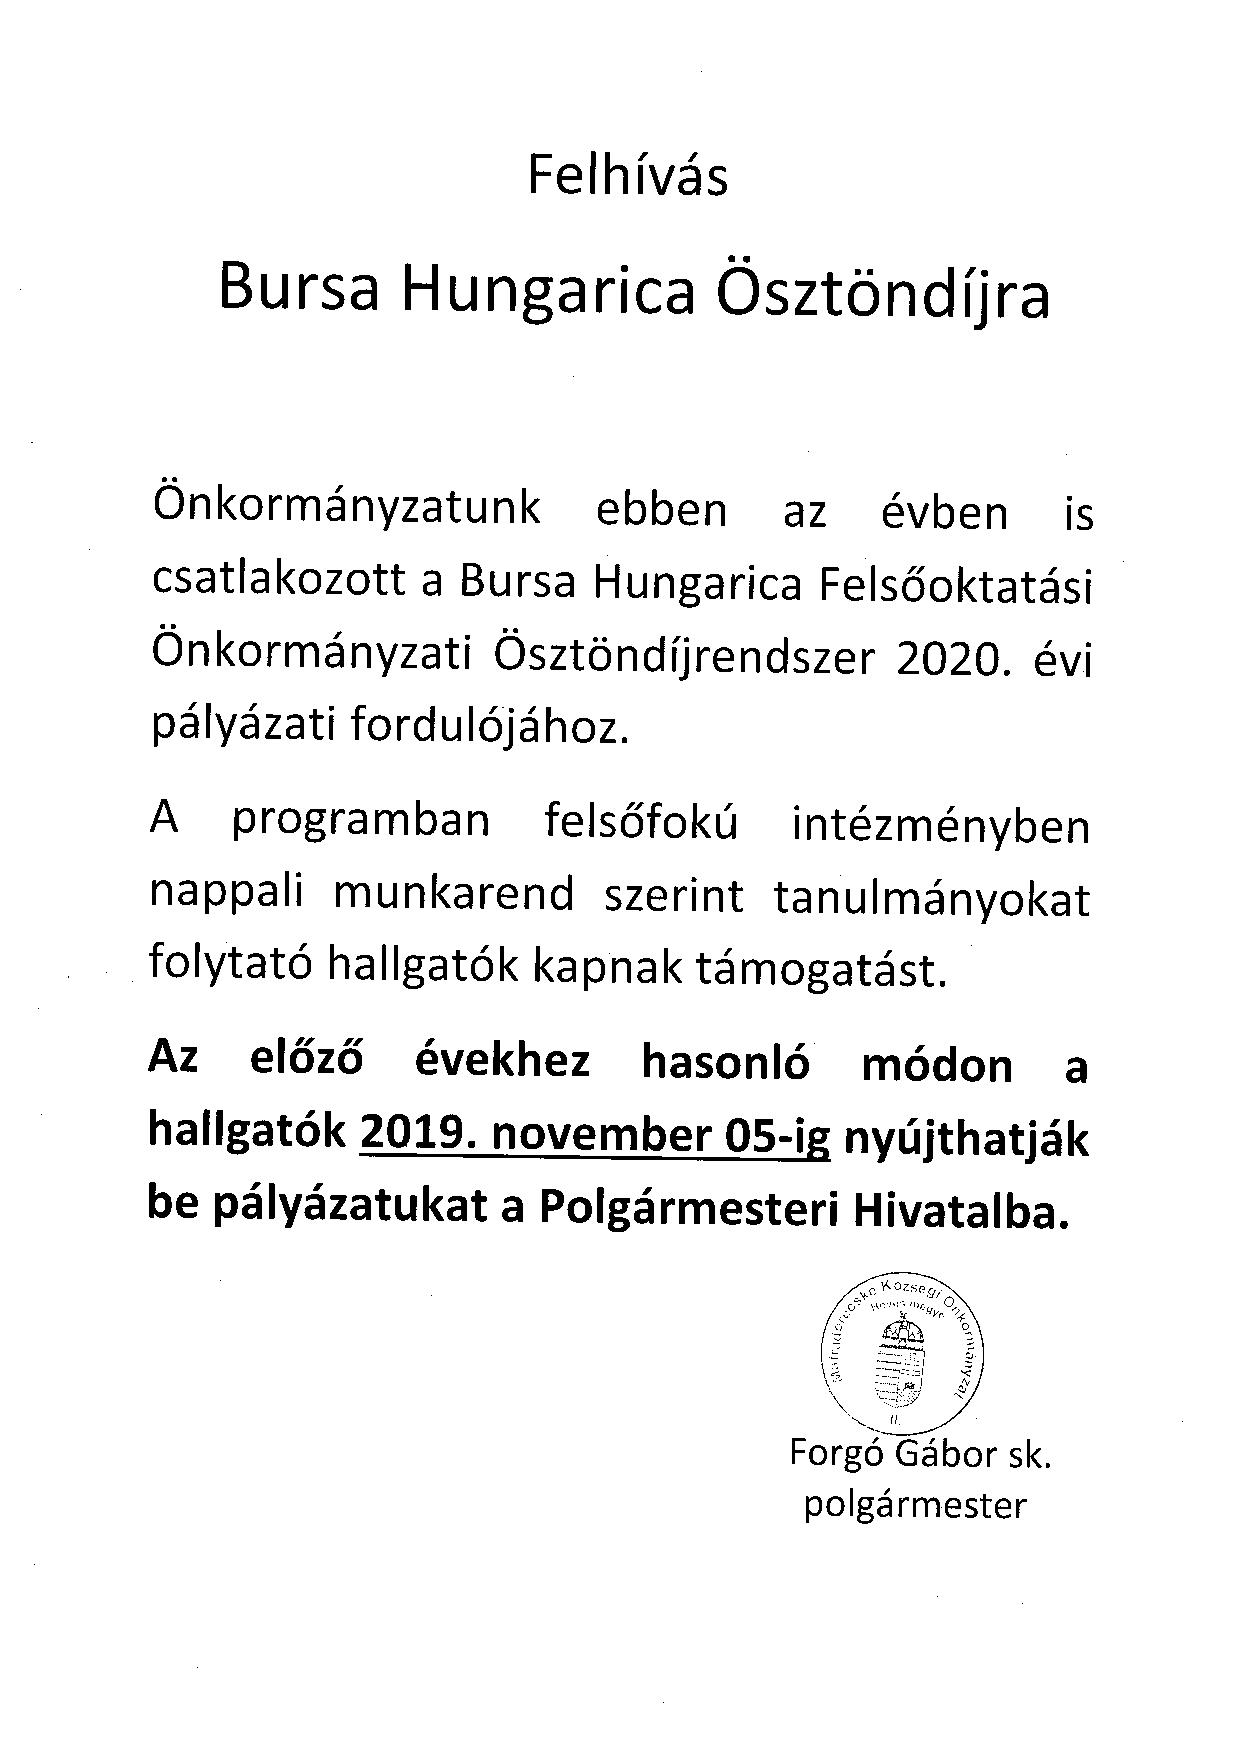 Bursa Hungarica ösztöndíj 2019